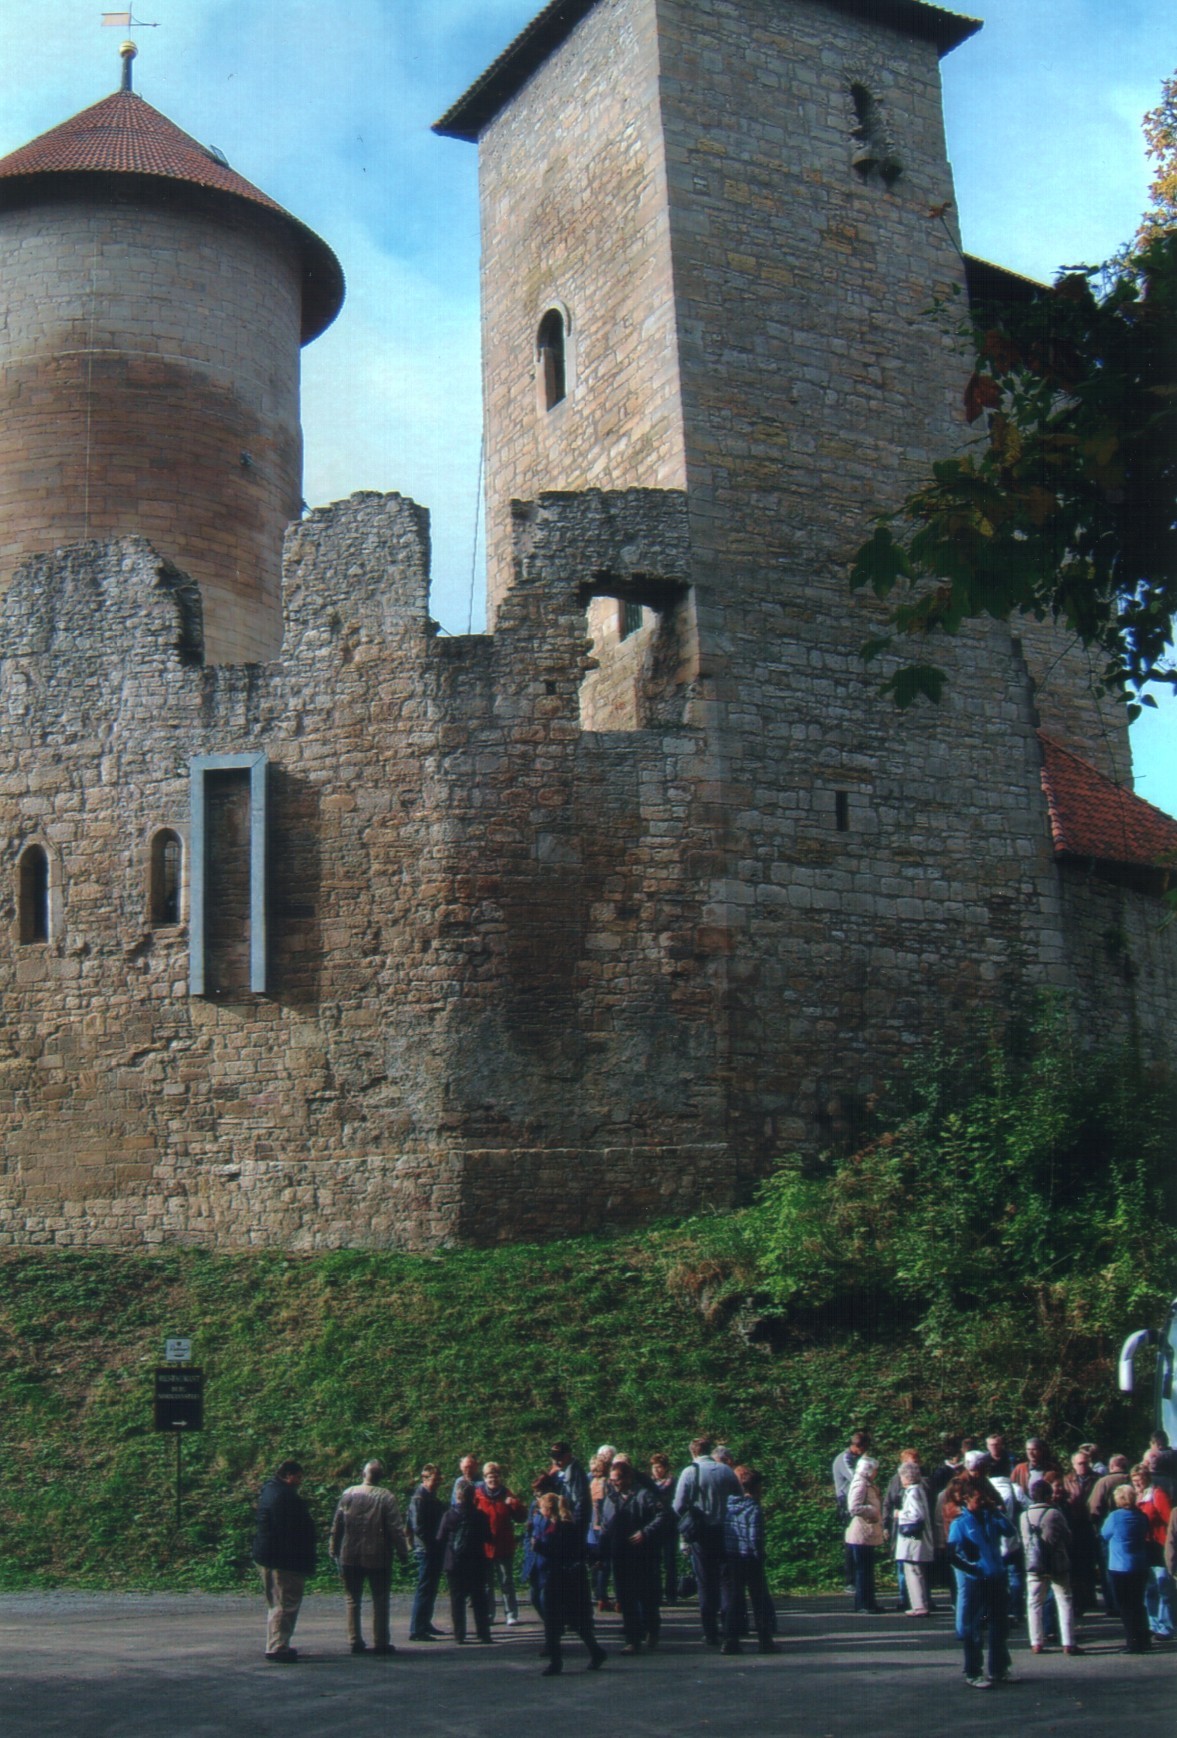 07.10.2012 – Vereinsfahrt in das Werratal nach Treffurt zur Burg Normannstein und nach Creuzburg zur alten Werrabrücke und zur Burg Creuzburg